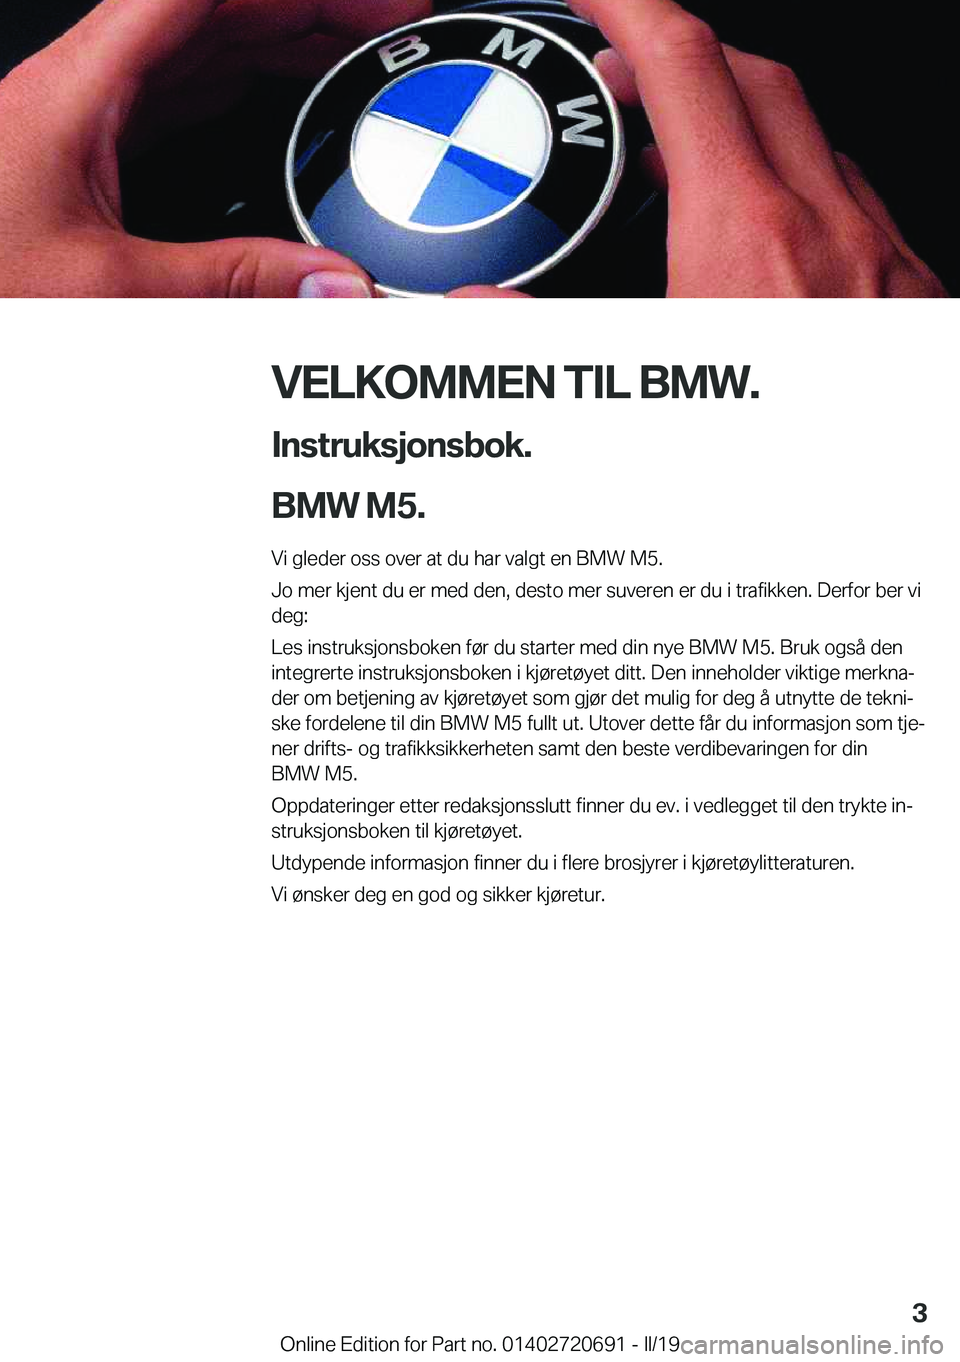 BMW M5 2019  InstruksjonsbØker (in Norwegian) �V�E�L�K�O�M�M�E�N��T�I�L��B�M�W�.�I�n�s�t�r�u�k�s�j�o�n�s�b�o�k�.
�B�M�W��M�5�.
�V�i��g�l�e�d�e�r��o�s�s��o�v�e�r��a�t��d�u��h�a�r��v�a�l�g�t��e�n��B�M�W��M�5�. �J�o��m�e�r��k�j�e�n�t�